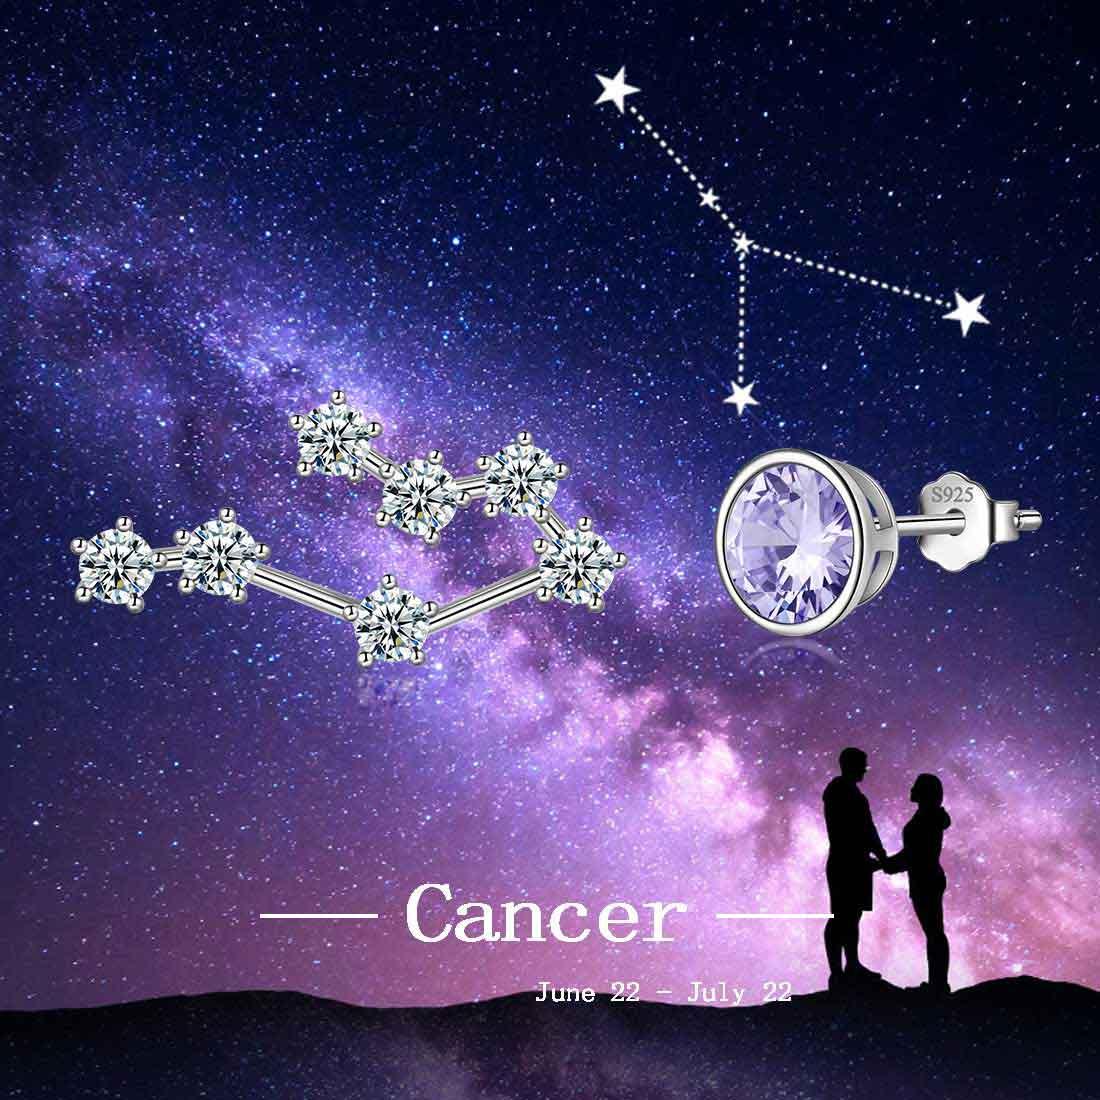 Cancer Earrings June Birthstone Zodiac Studs - Earrings - Aurora Tears